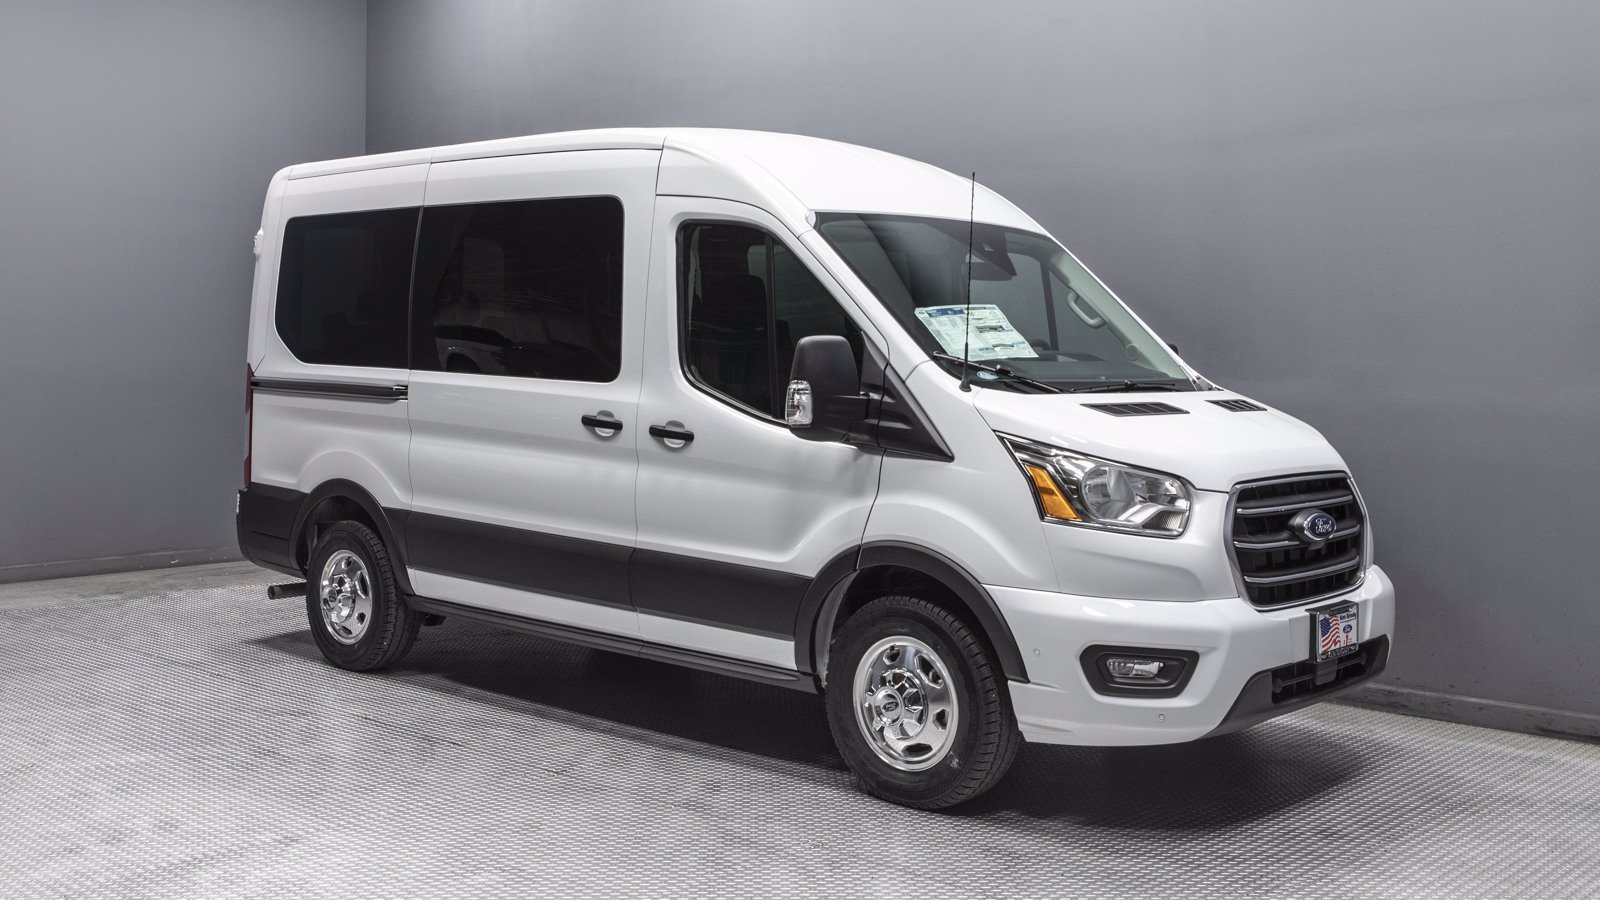 New 2020 Ford Transit Passenger Wagon XLT Fullsize Passenger Van in